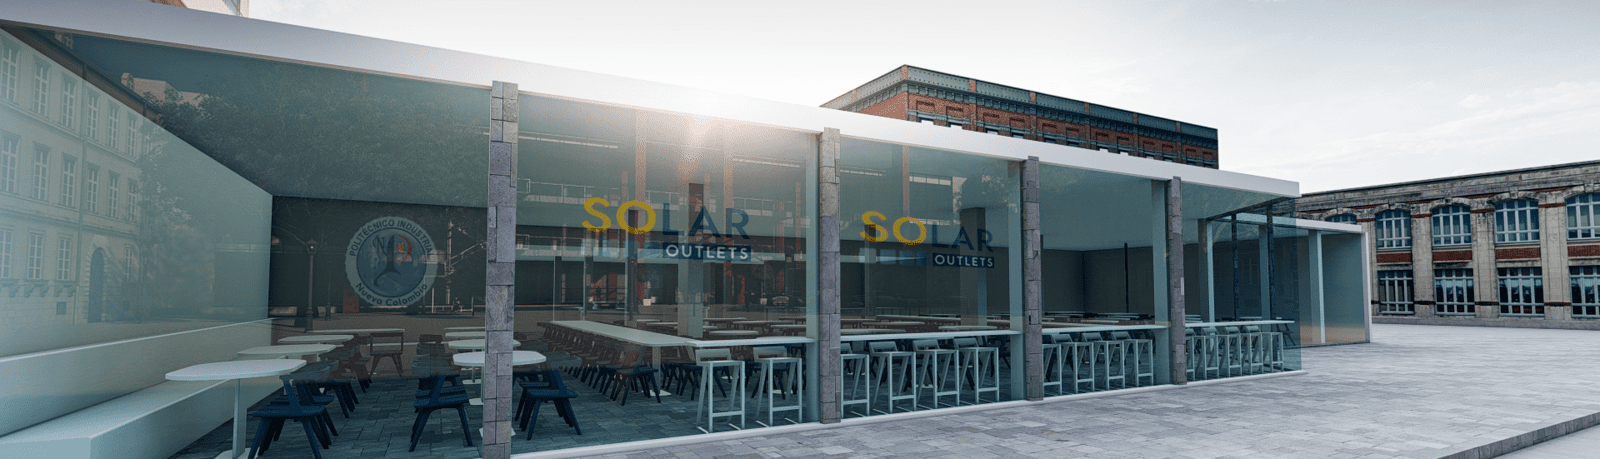 SO Solar Academy / Politecnico Industrial Nueva Colombia